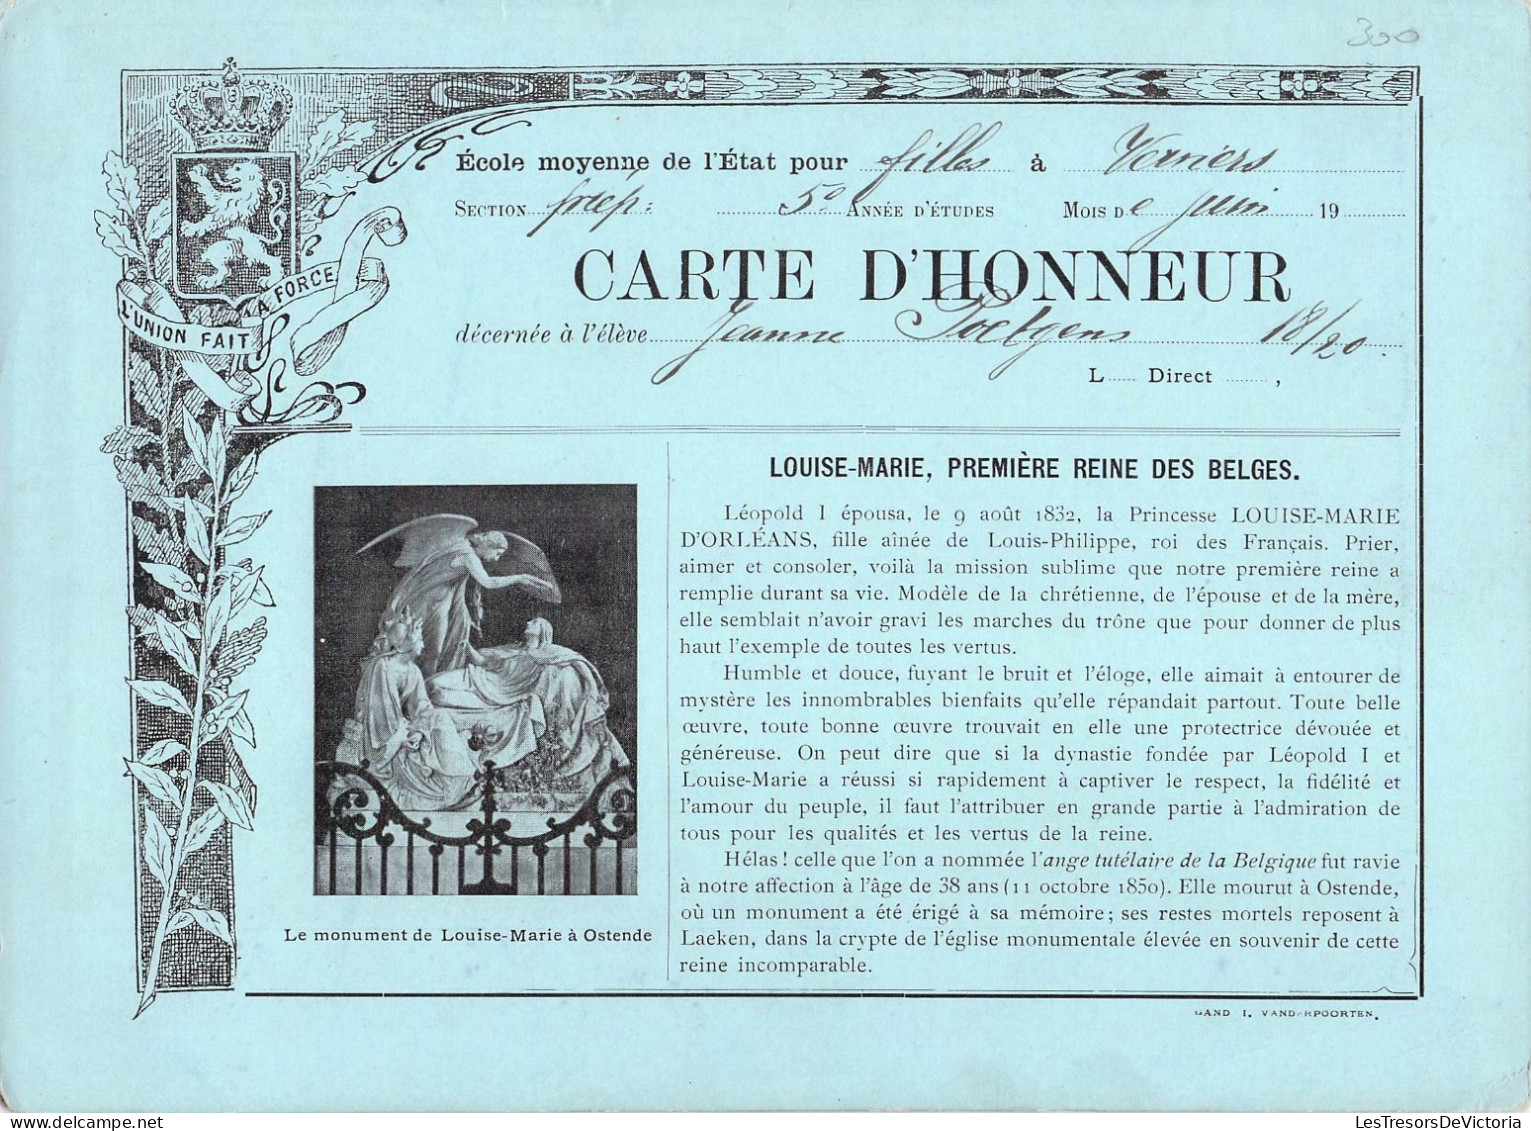 Vieux Papiers - Témoignages D'honneur Scolaires - Lot De 11 Documents - Diploma & School Reports